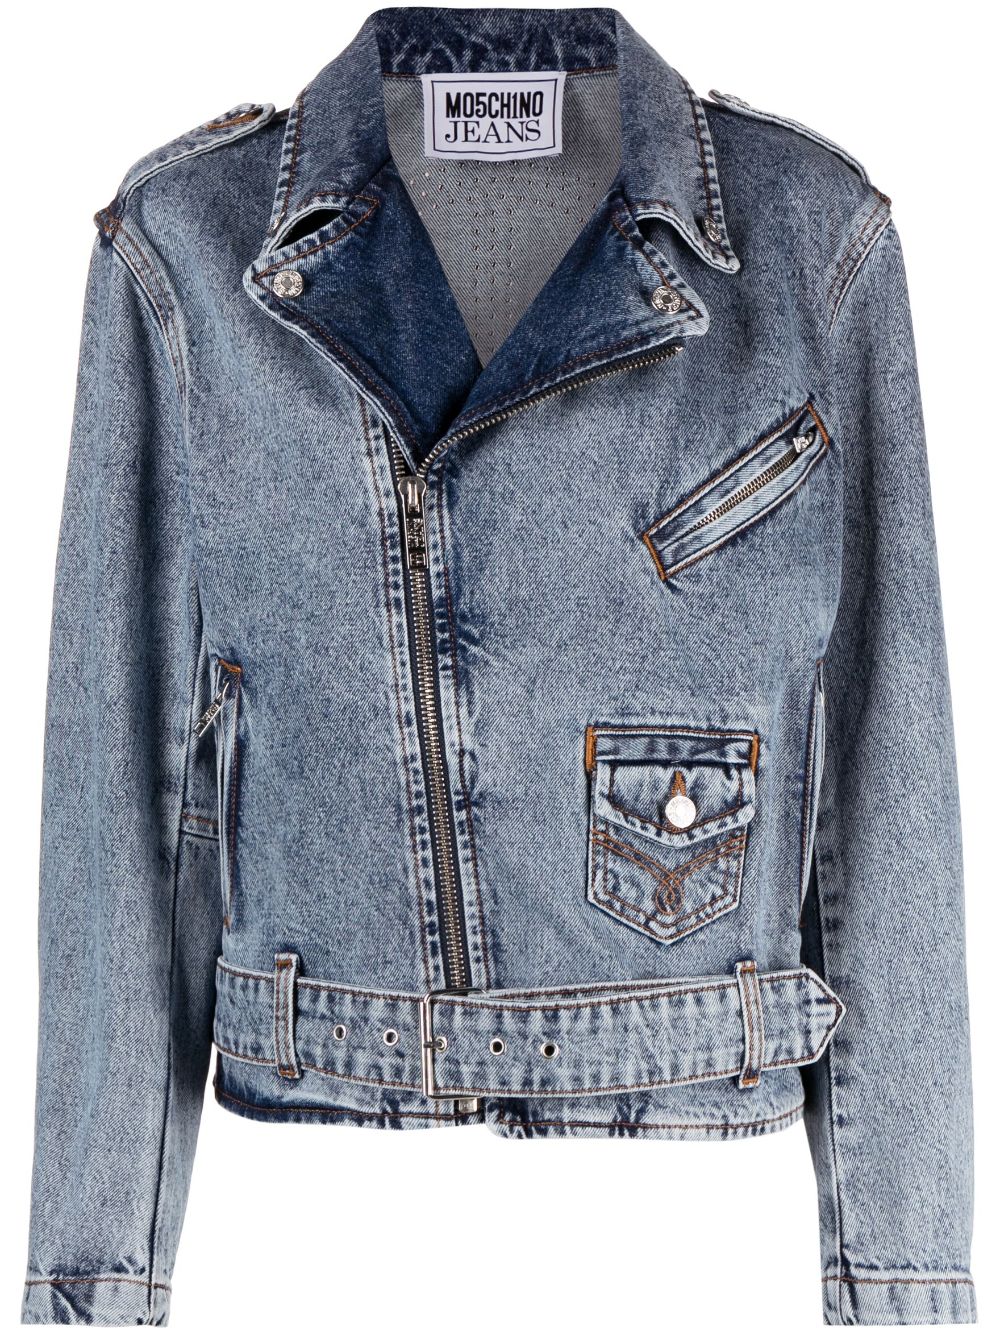 MOSCHINO JEANS crystal-embellished denim biker jacket - Blue